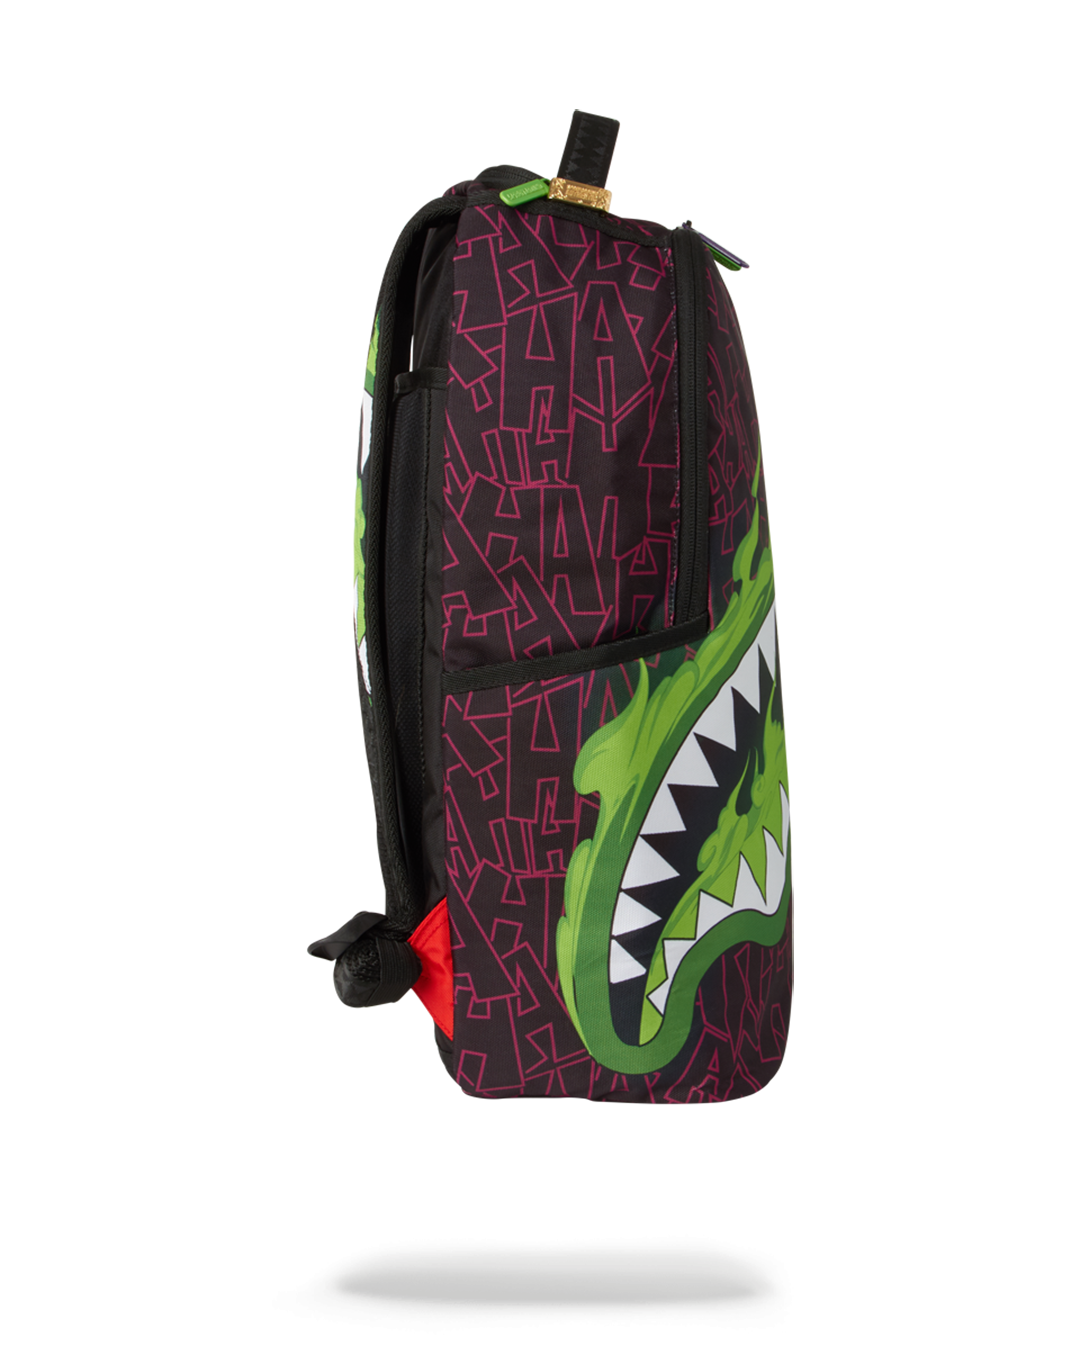 Sprayground Slime Shark Back Pack Backpack